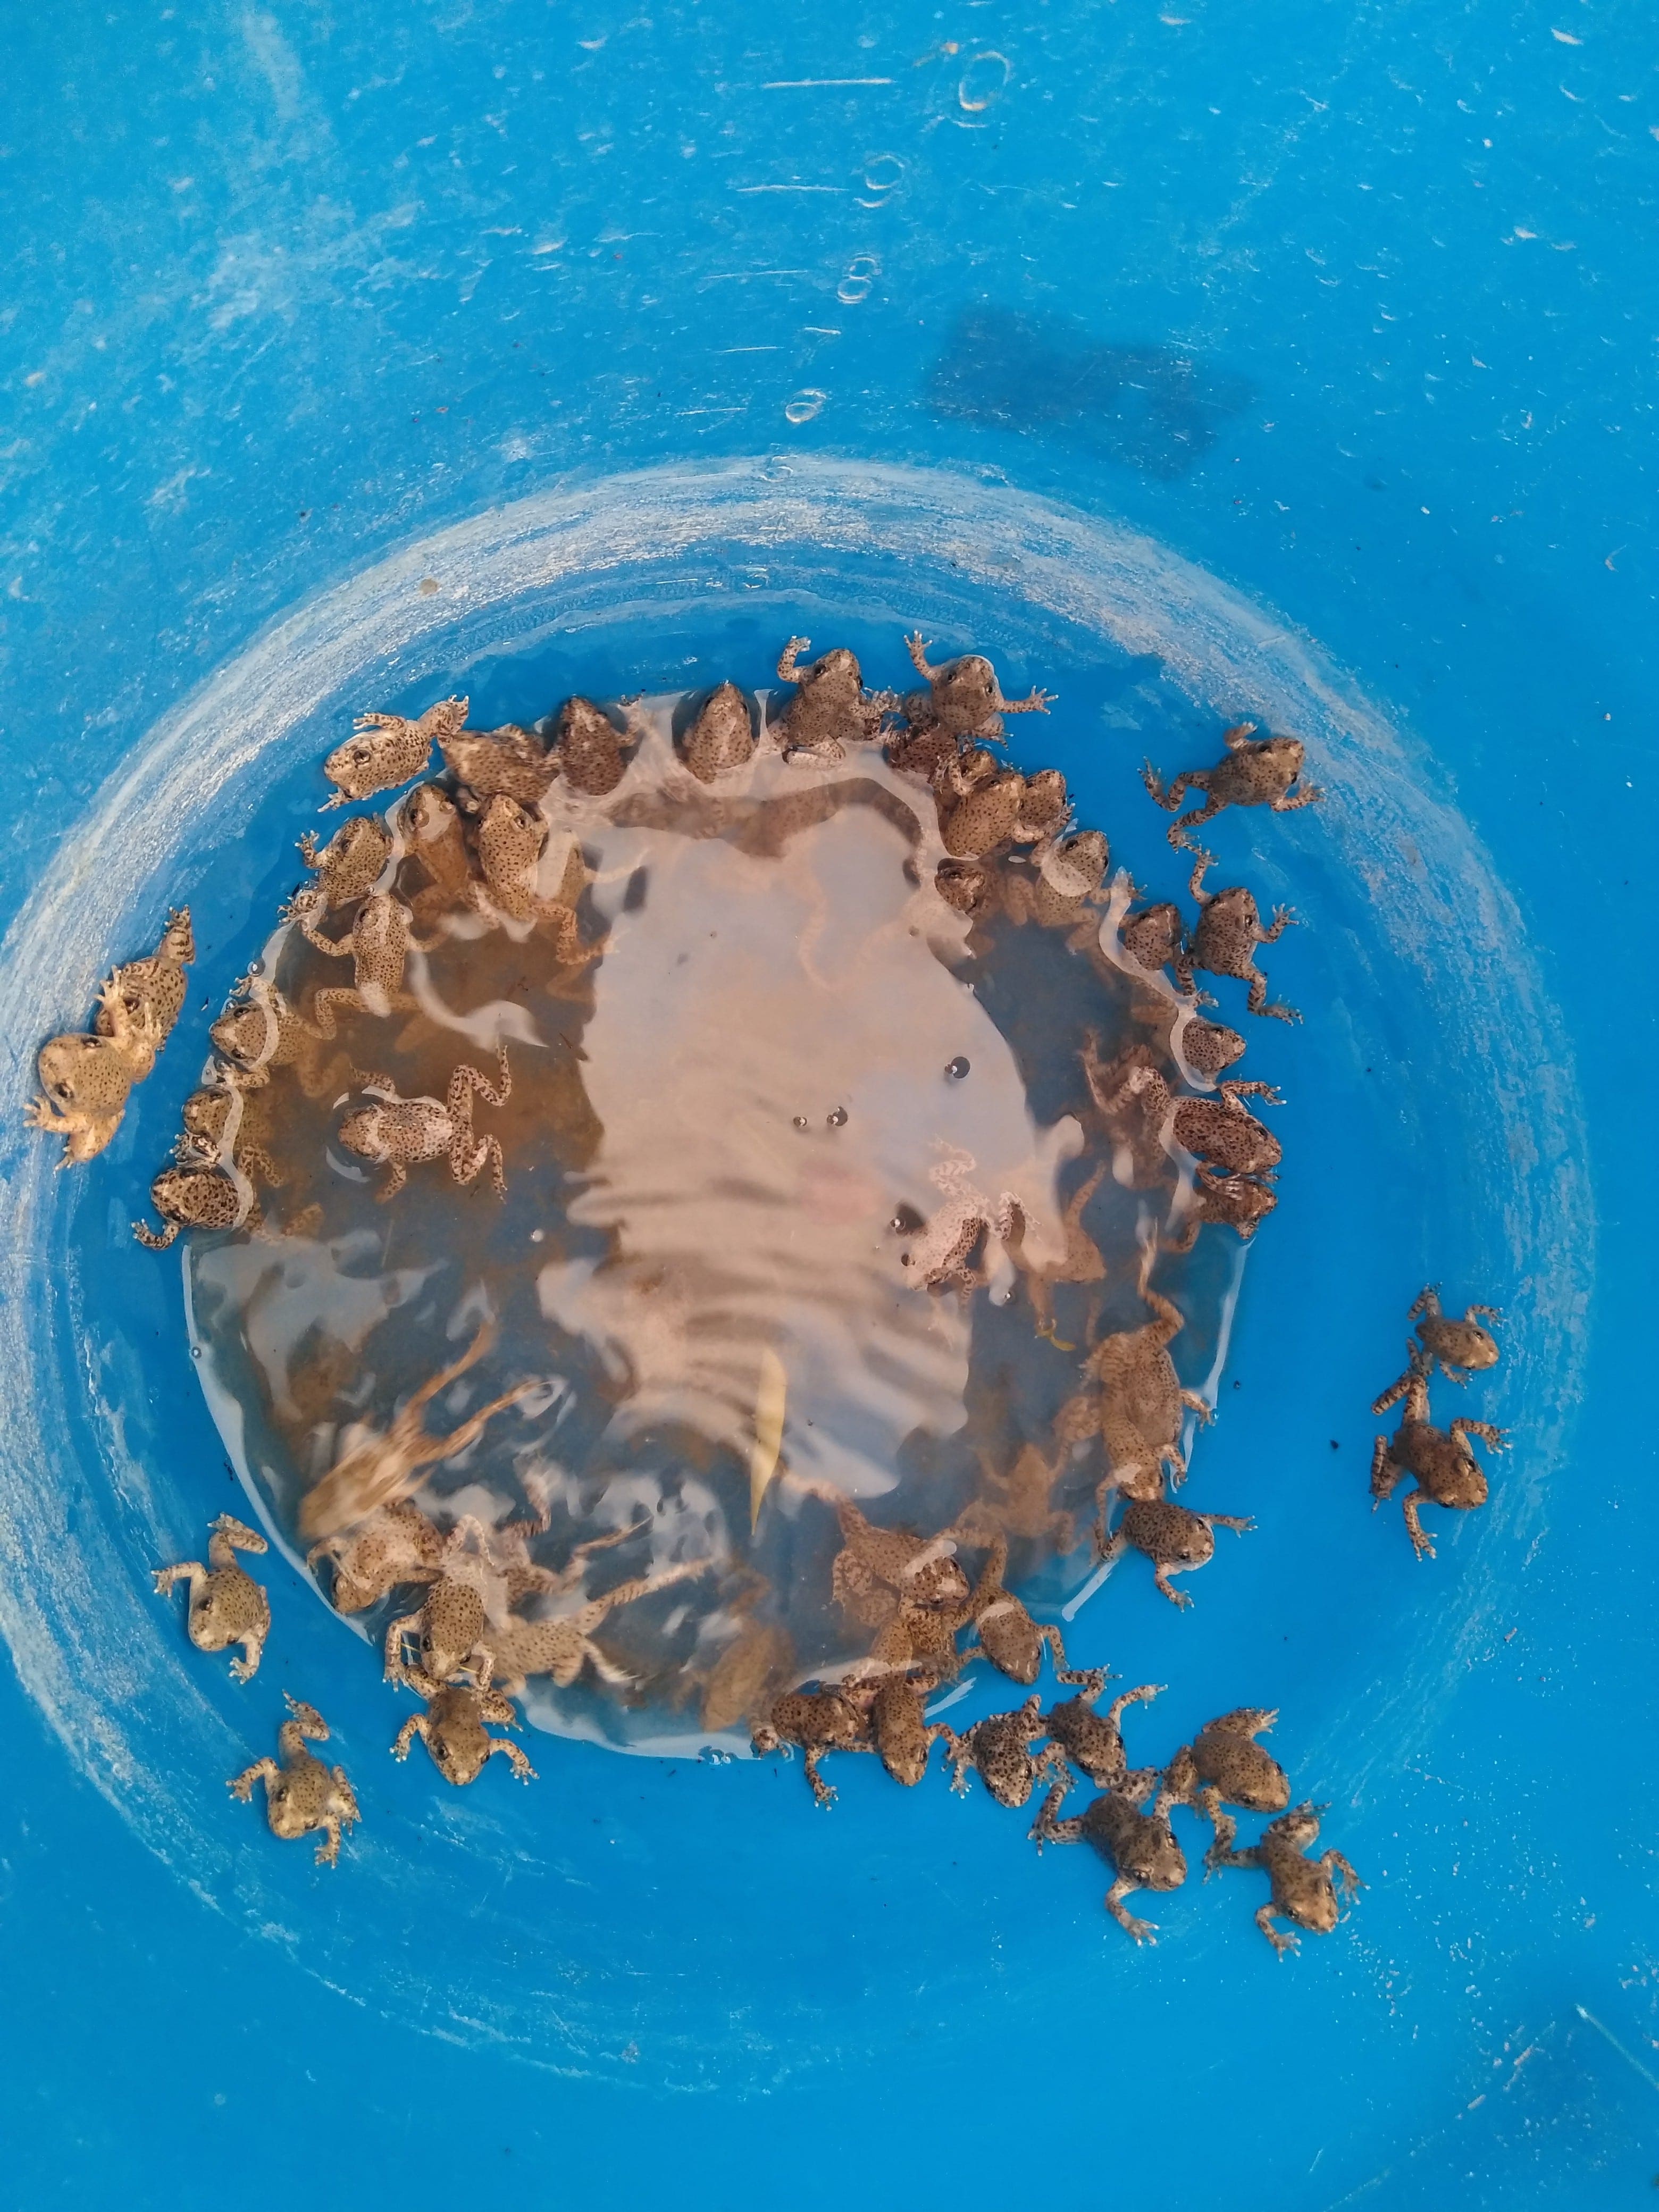 Anfibios saliendo de una jarra